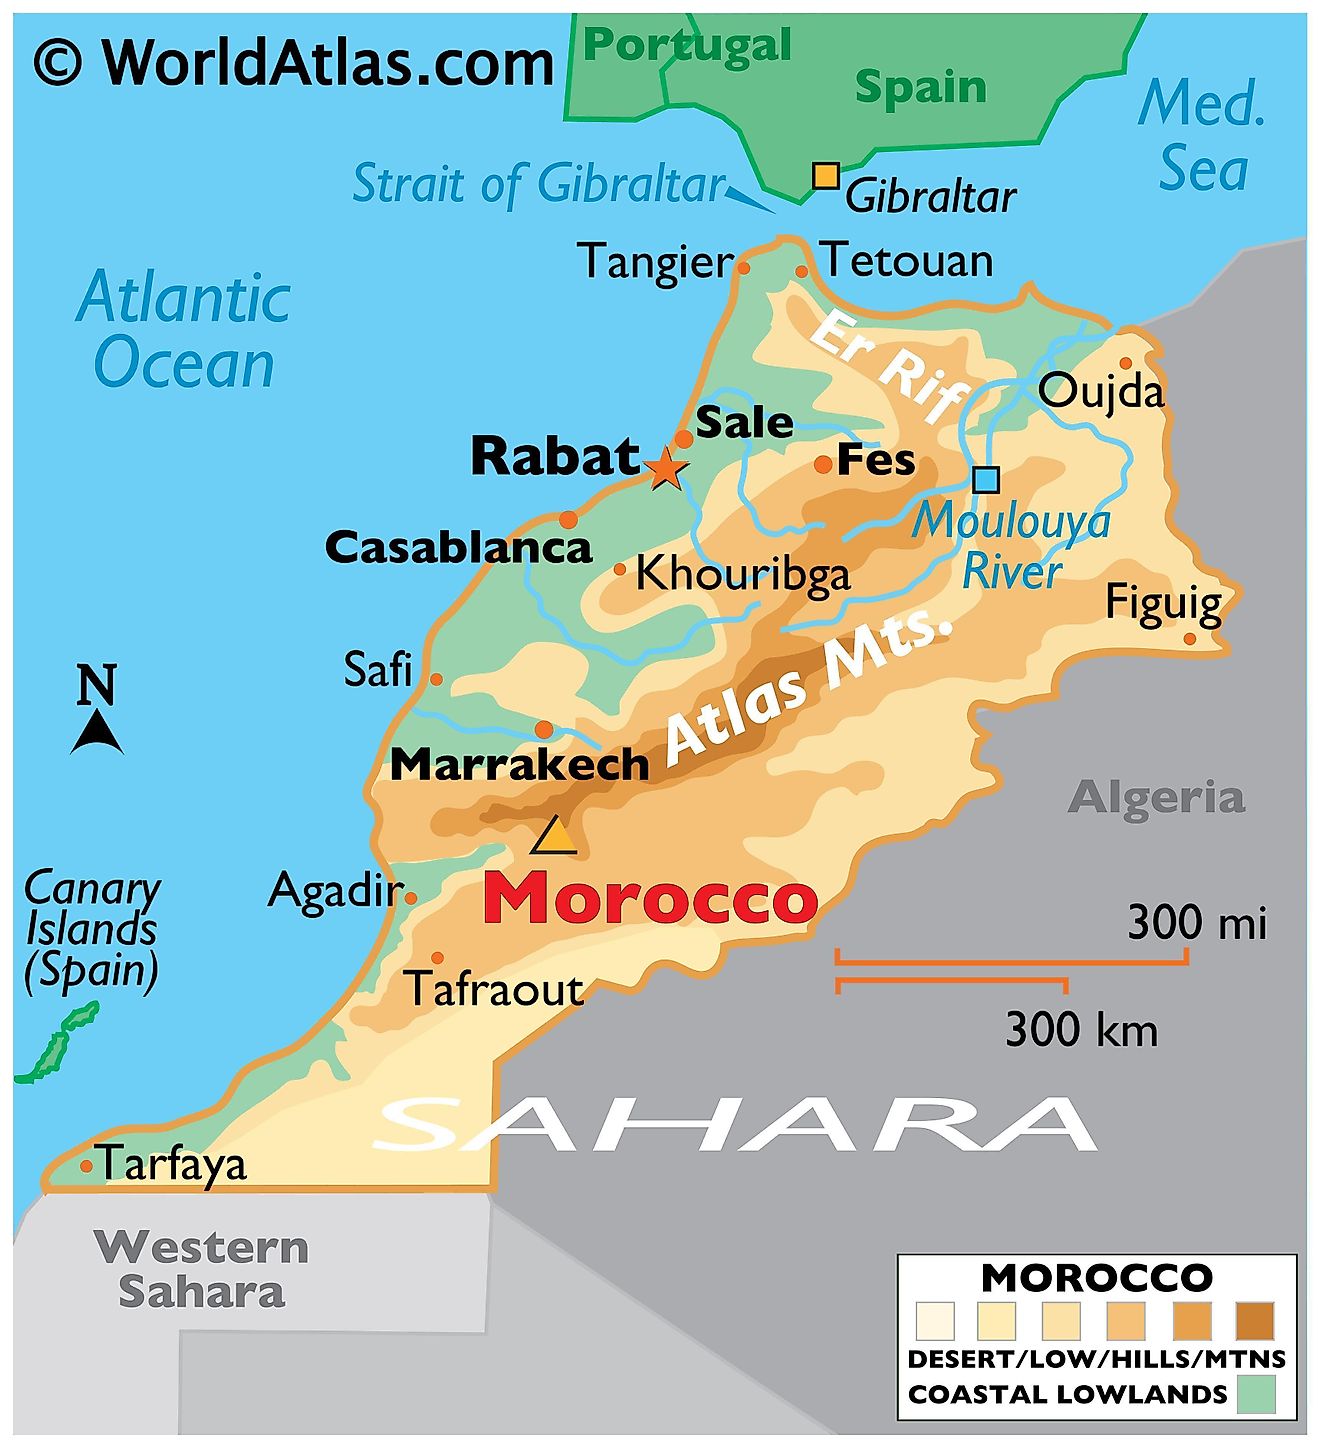 Mapa físico de Marruecos con límites estatales, ríos principales, desiertos, pico más alto, ciudades importantes y más.